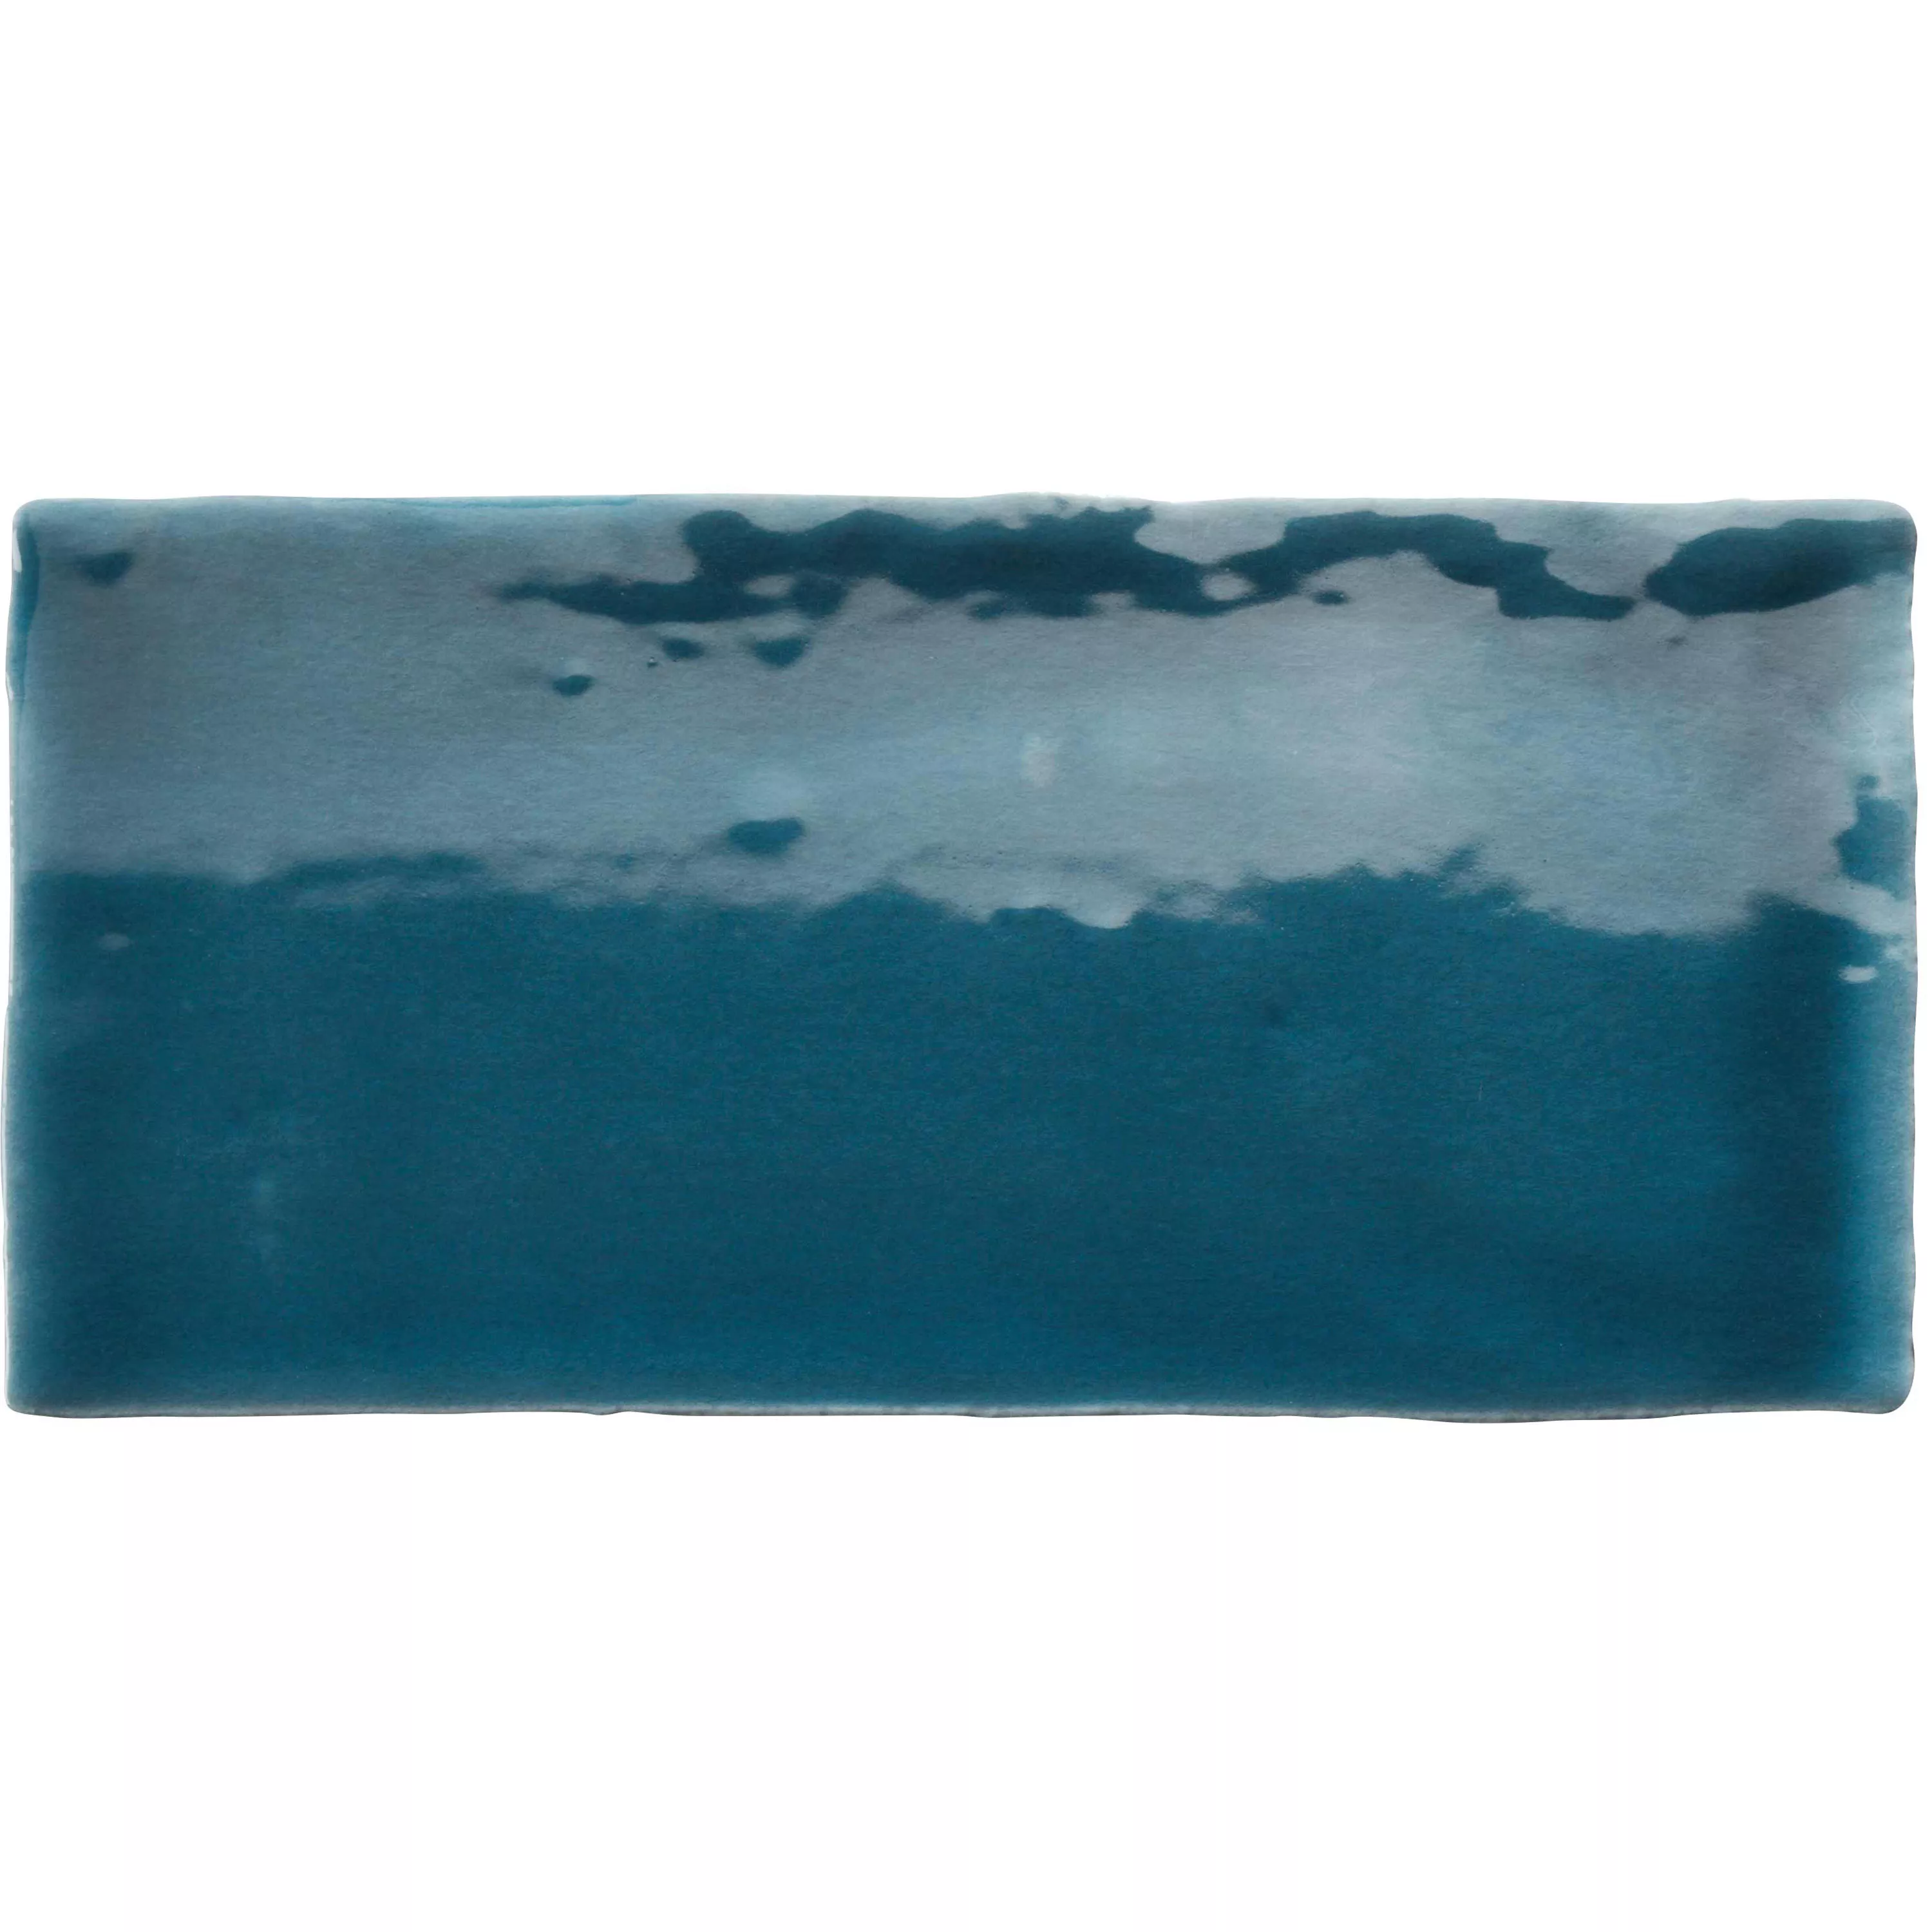 Próbka Płytki Ścienne Algier Wykonane Ręcznie 7,5x15cm Ciemnoniebieski